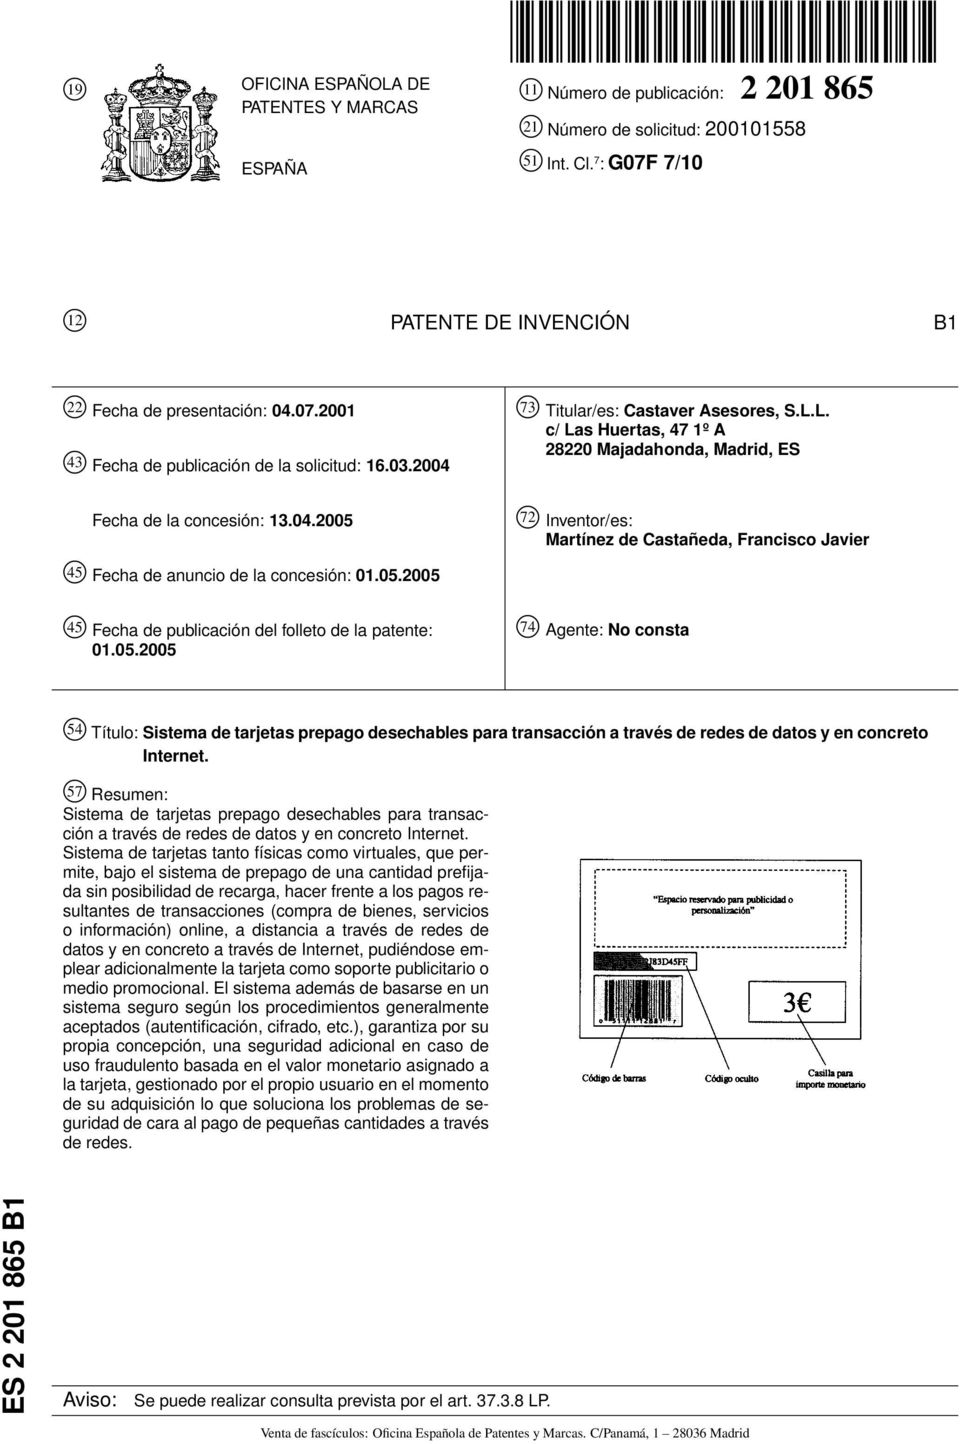 0.200 4 Fecha de publicación del folleto de la patente: 01.0.200 74 Agente: No consta 4 Título: Sistema de tarjetas prepago desechables para transacción a través de redes de datos y en concreto Internet.